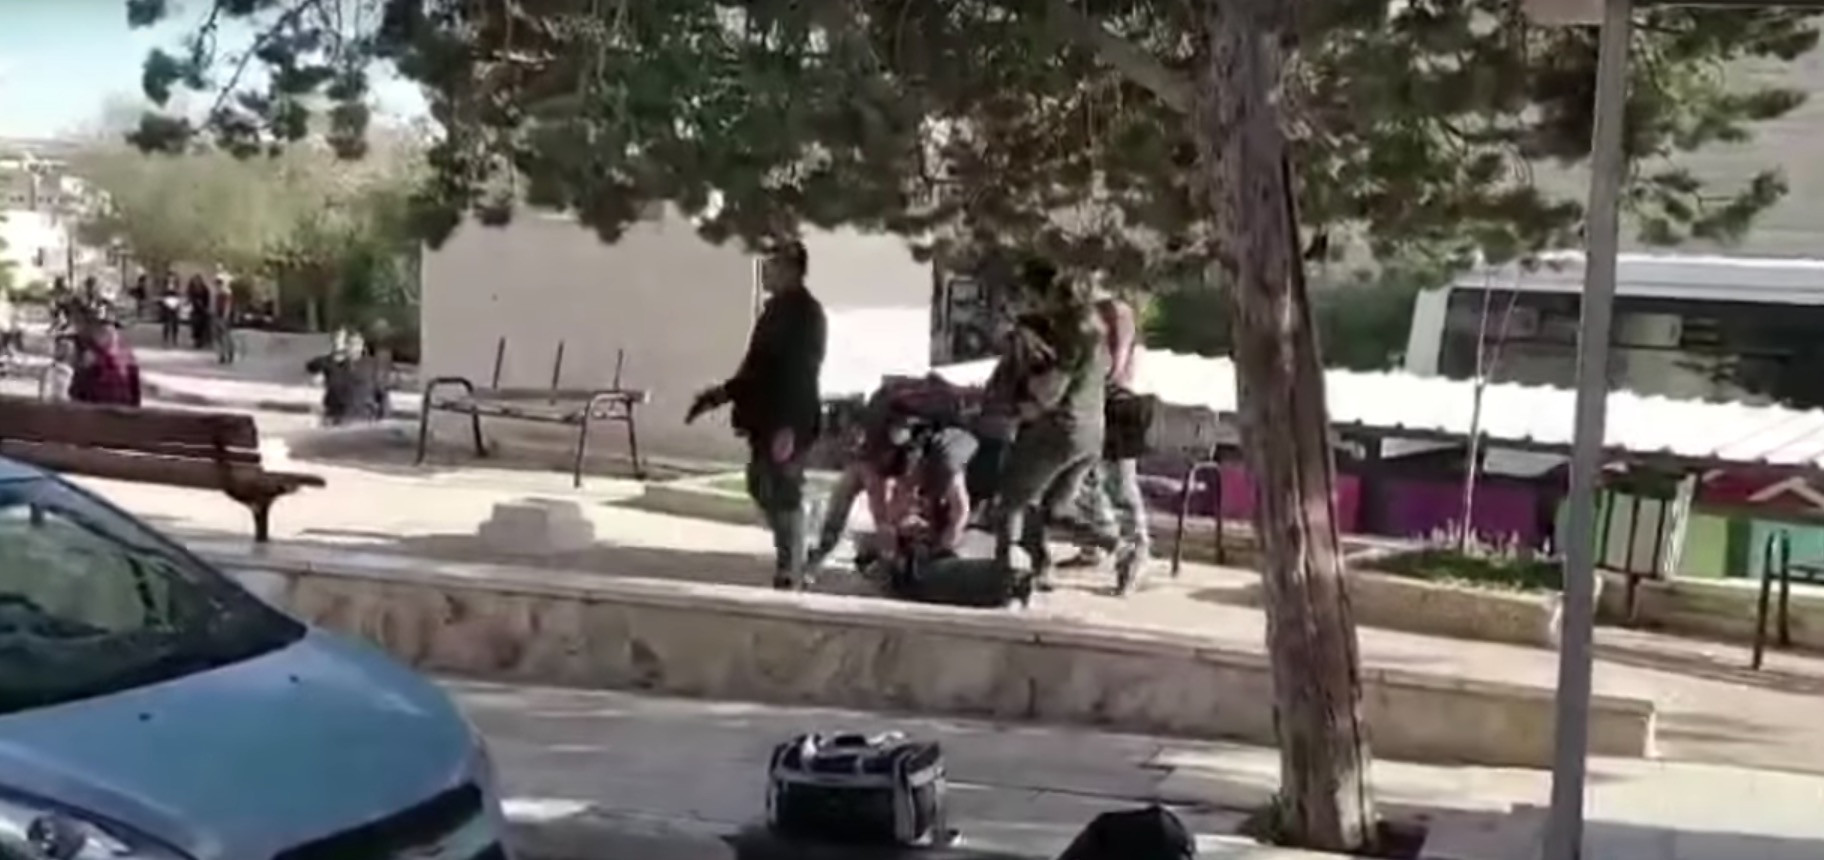 Ισραηλινοί πράκτορες απαγάγουν Παλαιστίνιο φοιτητή μέσα από το Πανεπιστήμιο [Βίντεο]